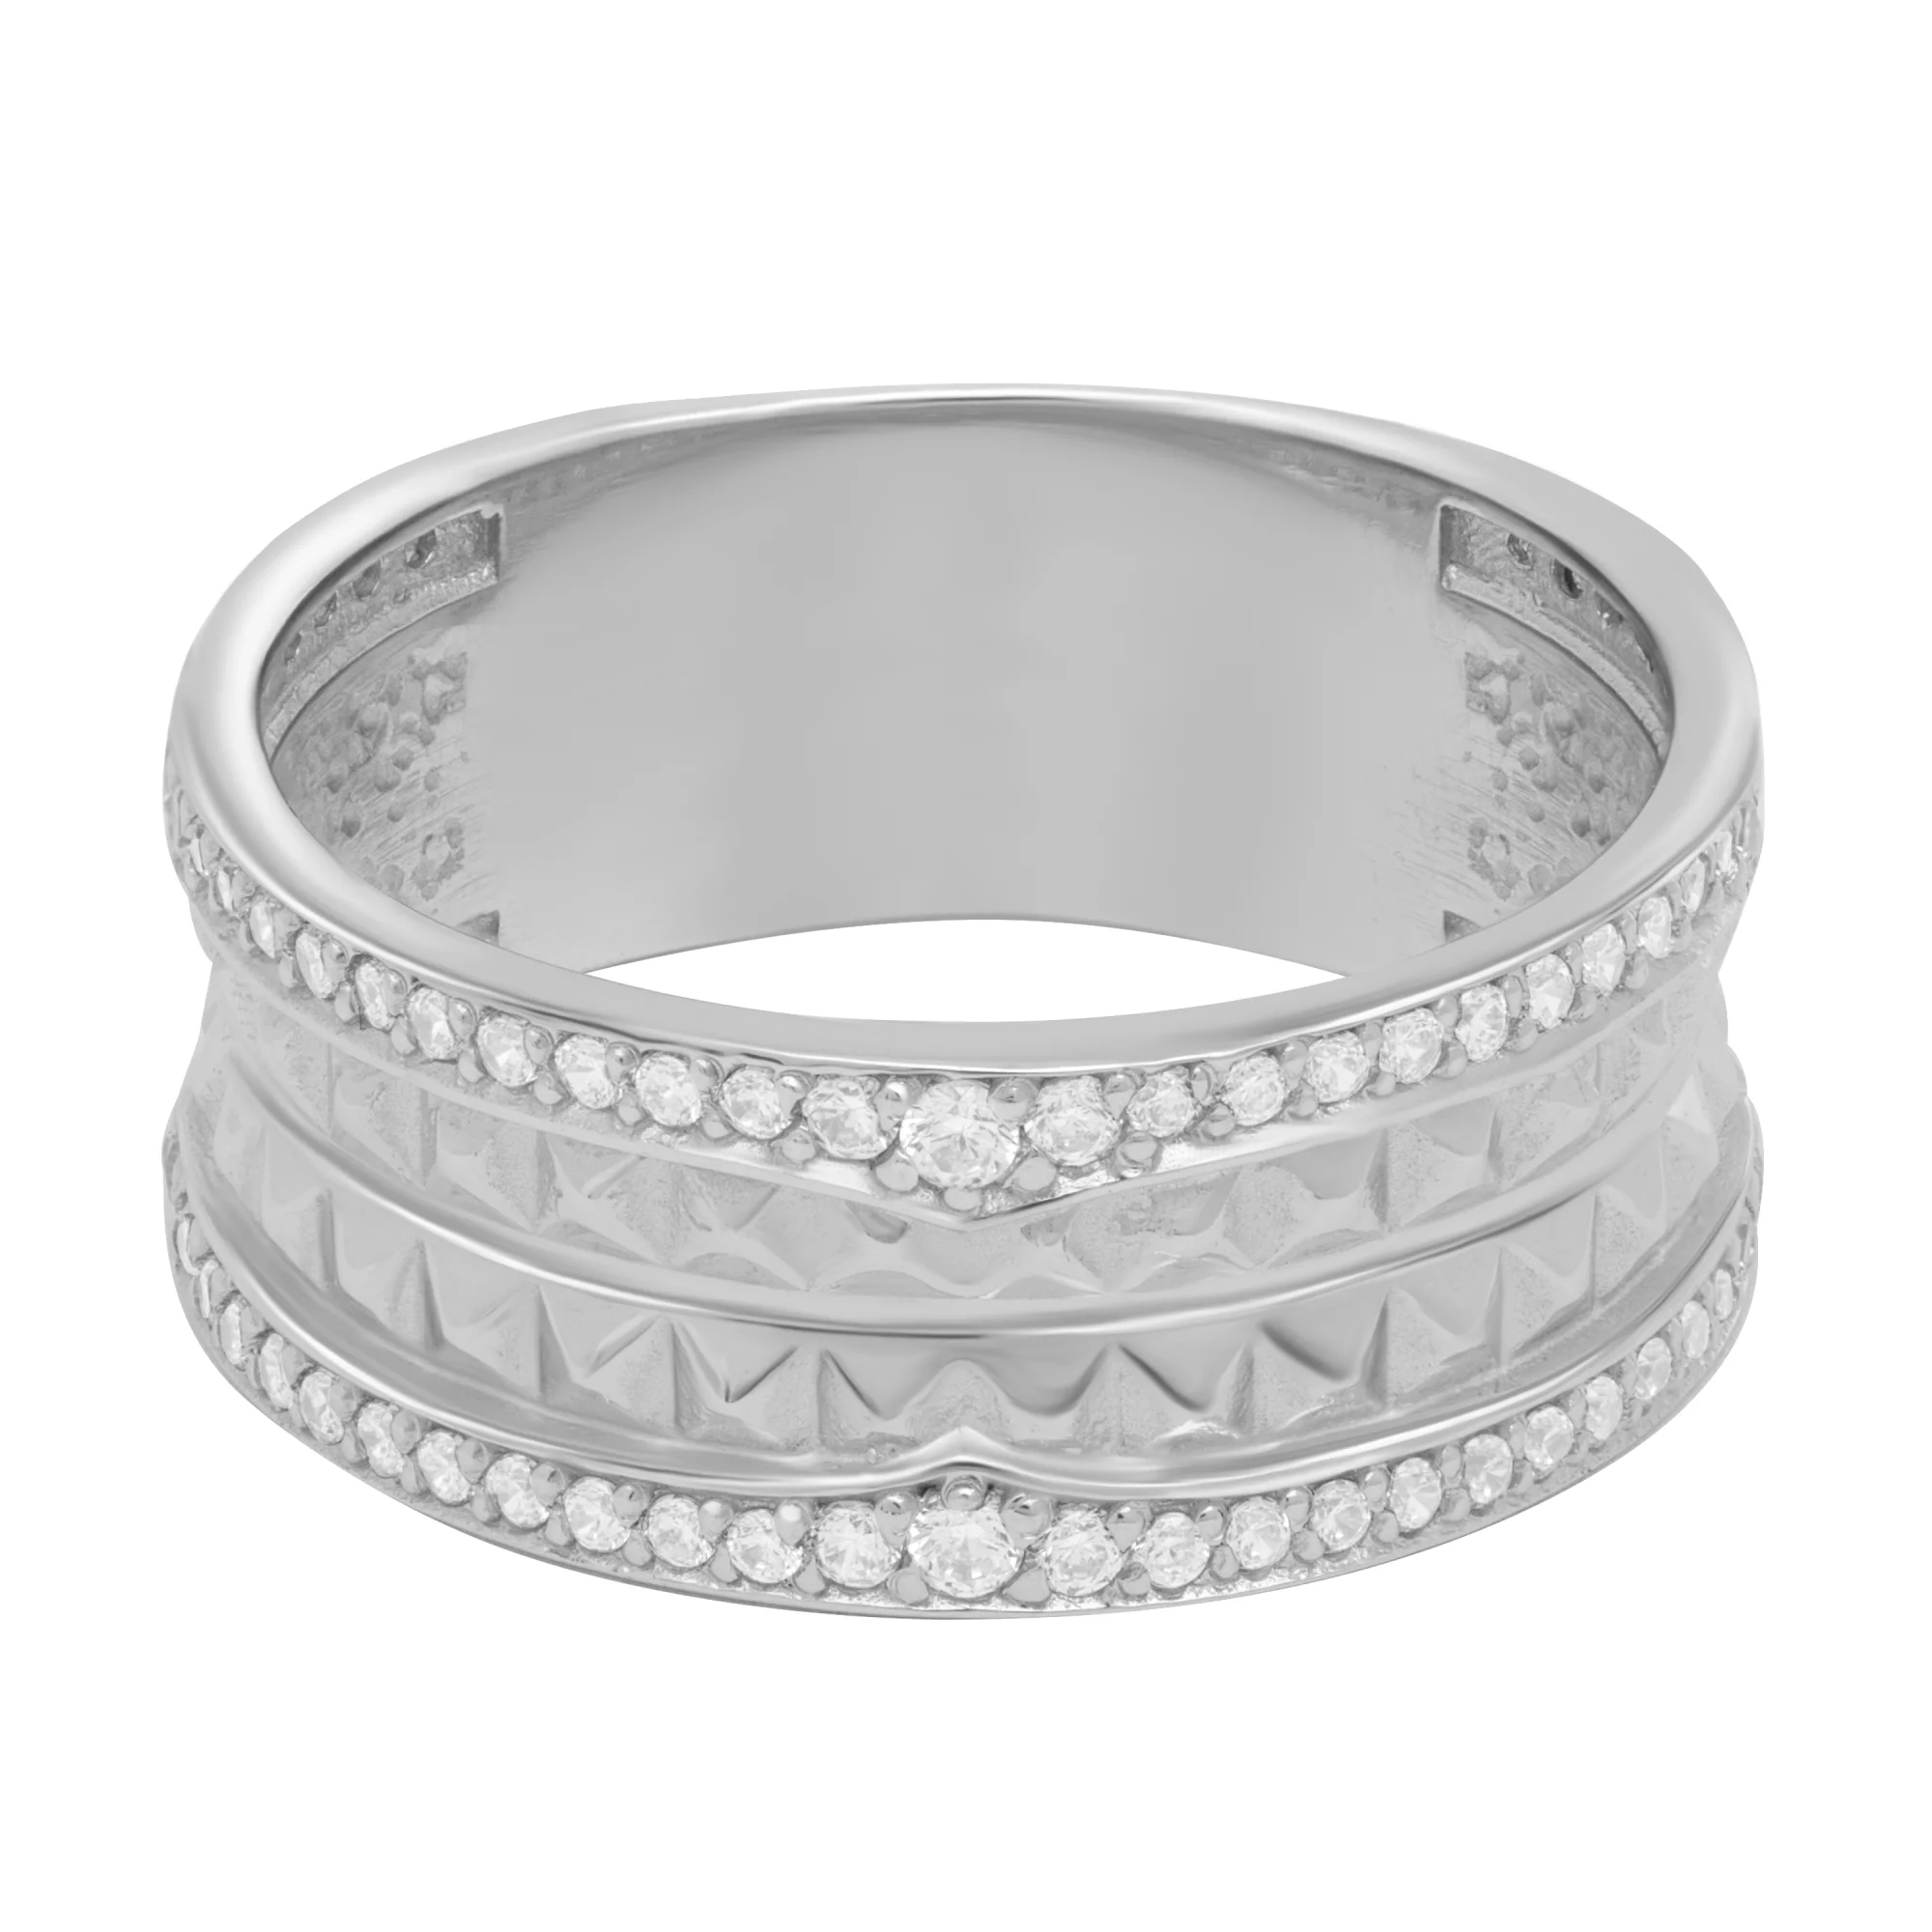 Широкое кольцо из белого золота с фианитами - 1614515 – изображение 4